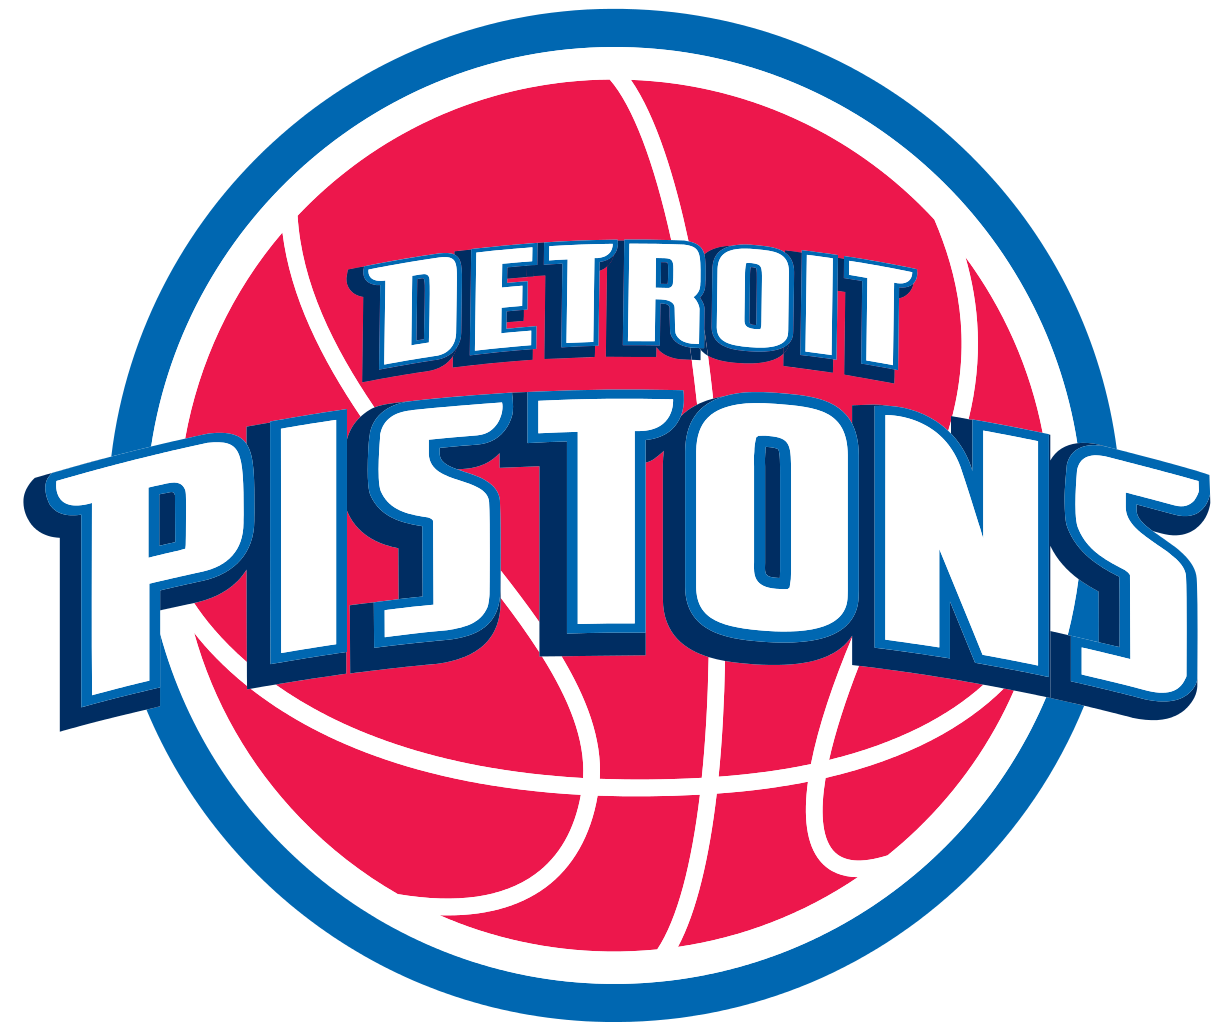 Detroit Pistons Backgrounds, Compatible - PC, Mobile, Gadgets| 1229x1024 px